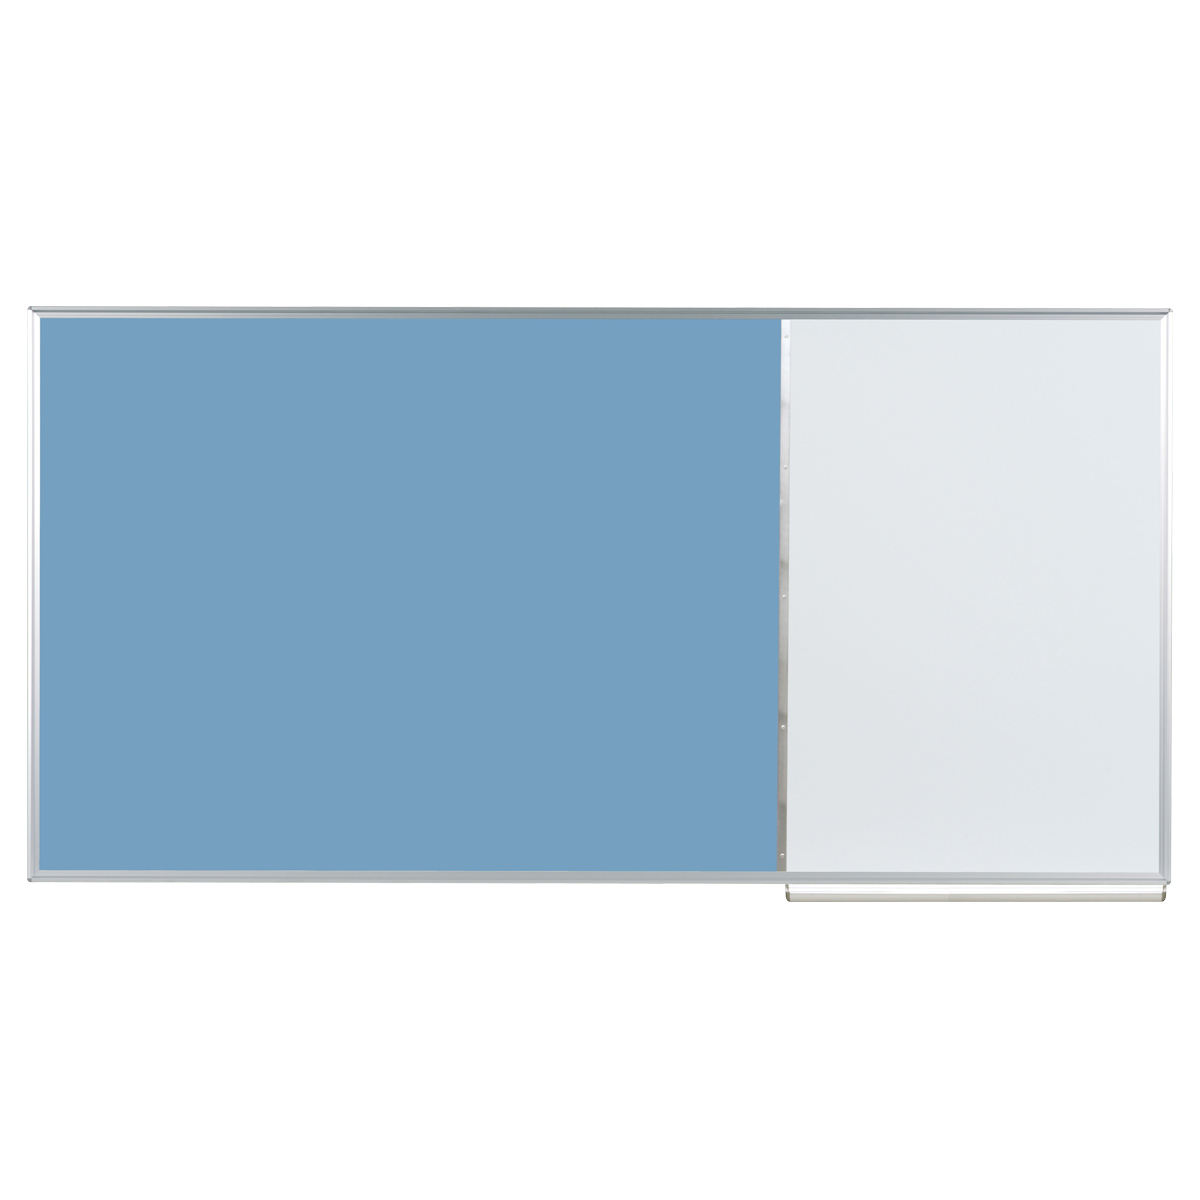 壁掛けコンビボード 幅1810 高さ910 ブルー ボード その他ボード 壁掛掲示板 プレゼン用品 展示用ボード パネル 掲示板 ホワイトボード ハイブリッド チラシ ポ